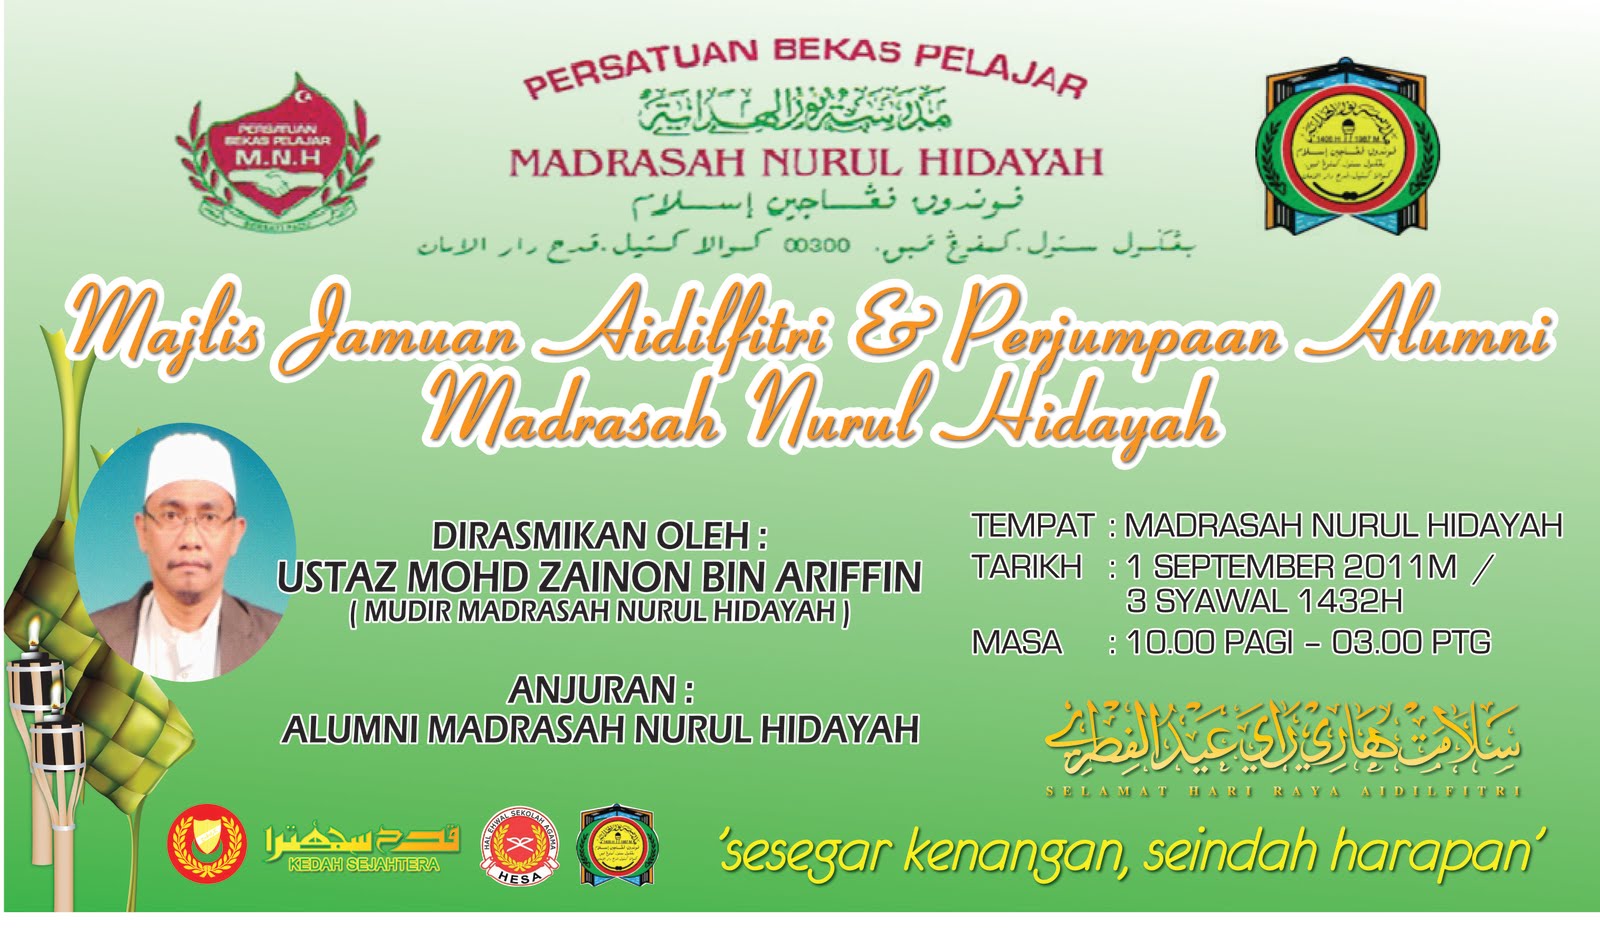 Alumni Madrasah Nurul Hidayah KG Tembak